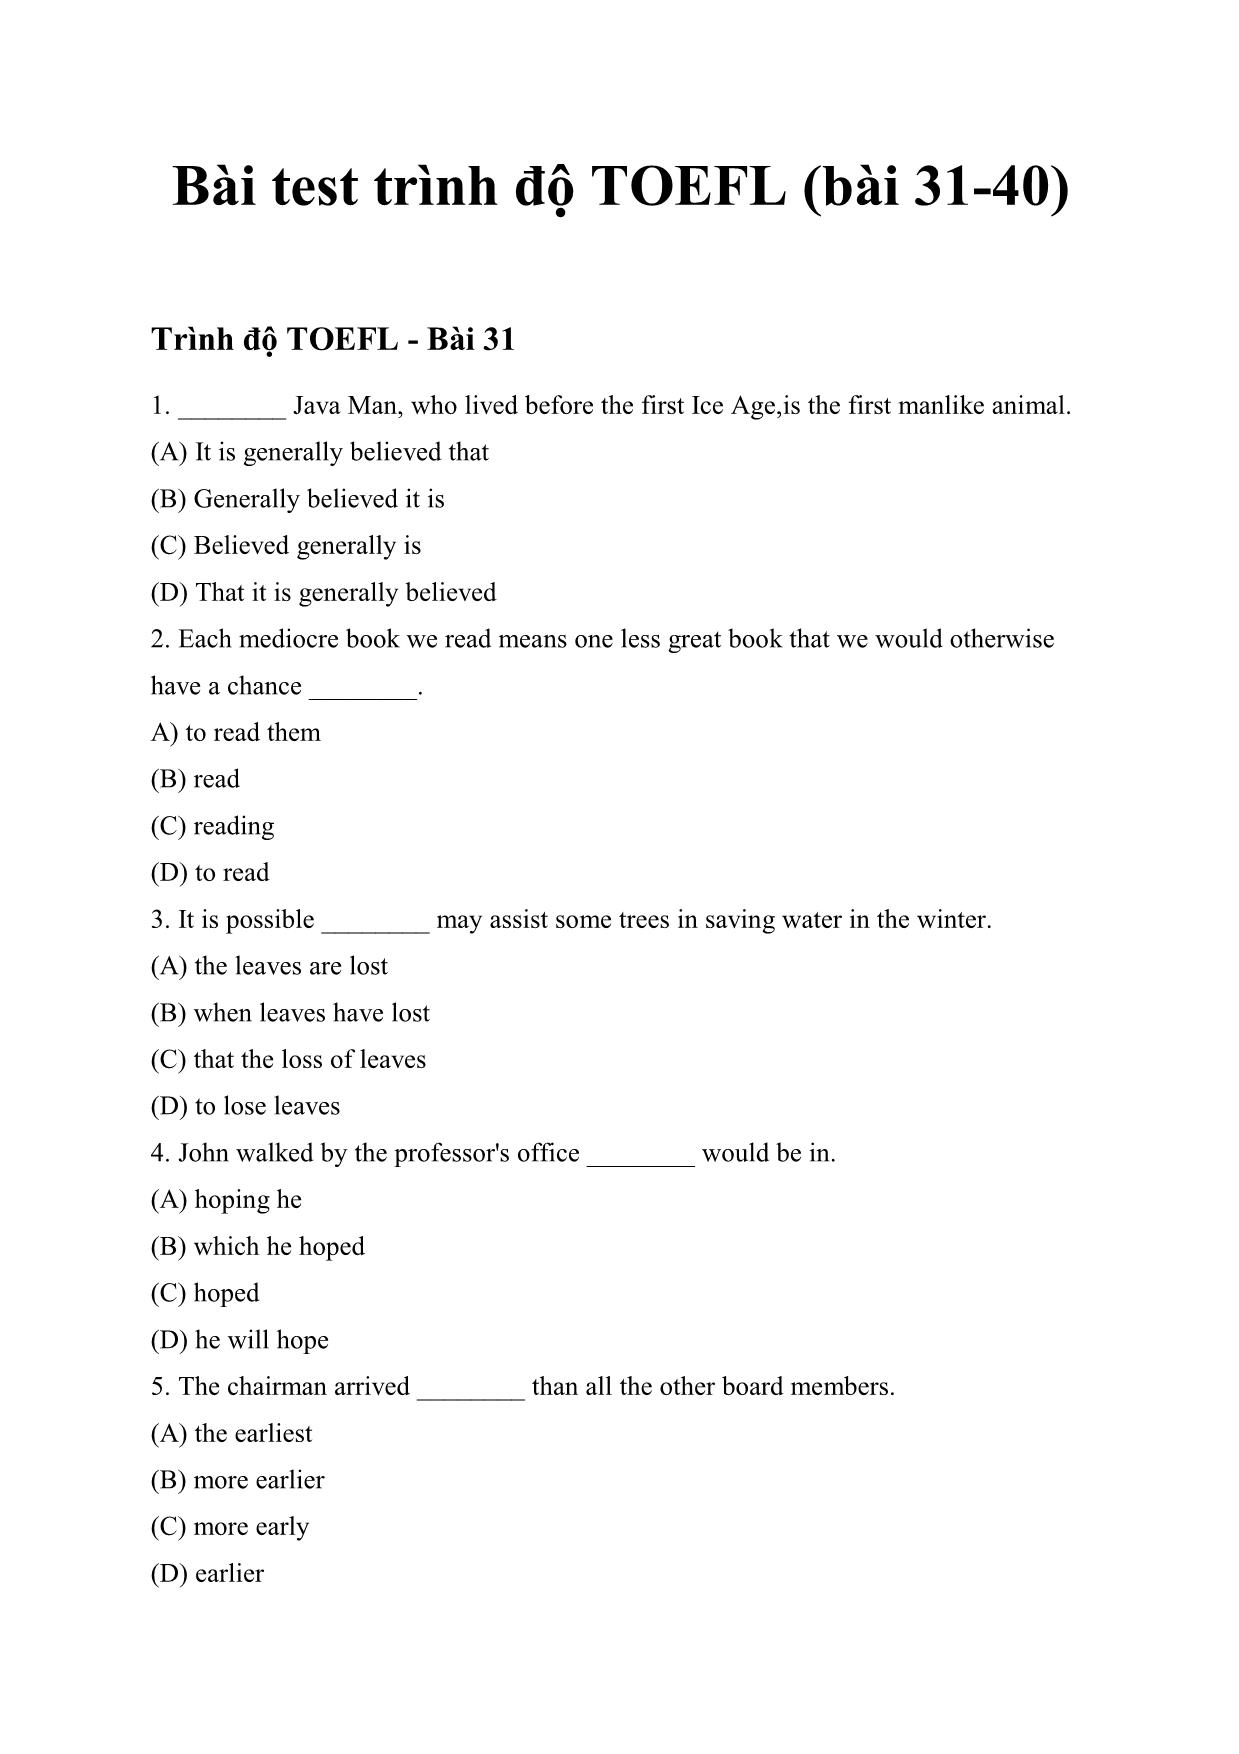 Bài test trình độ TOEFL trang 1